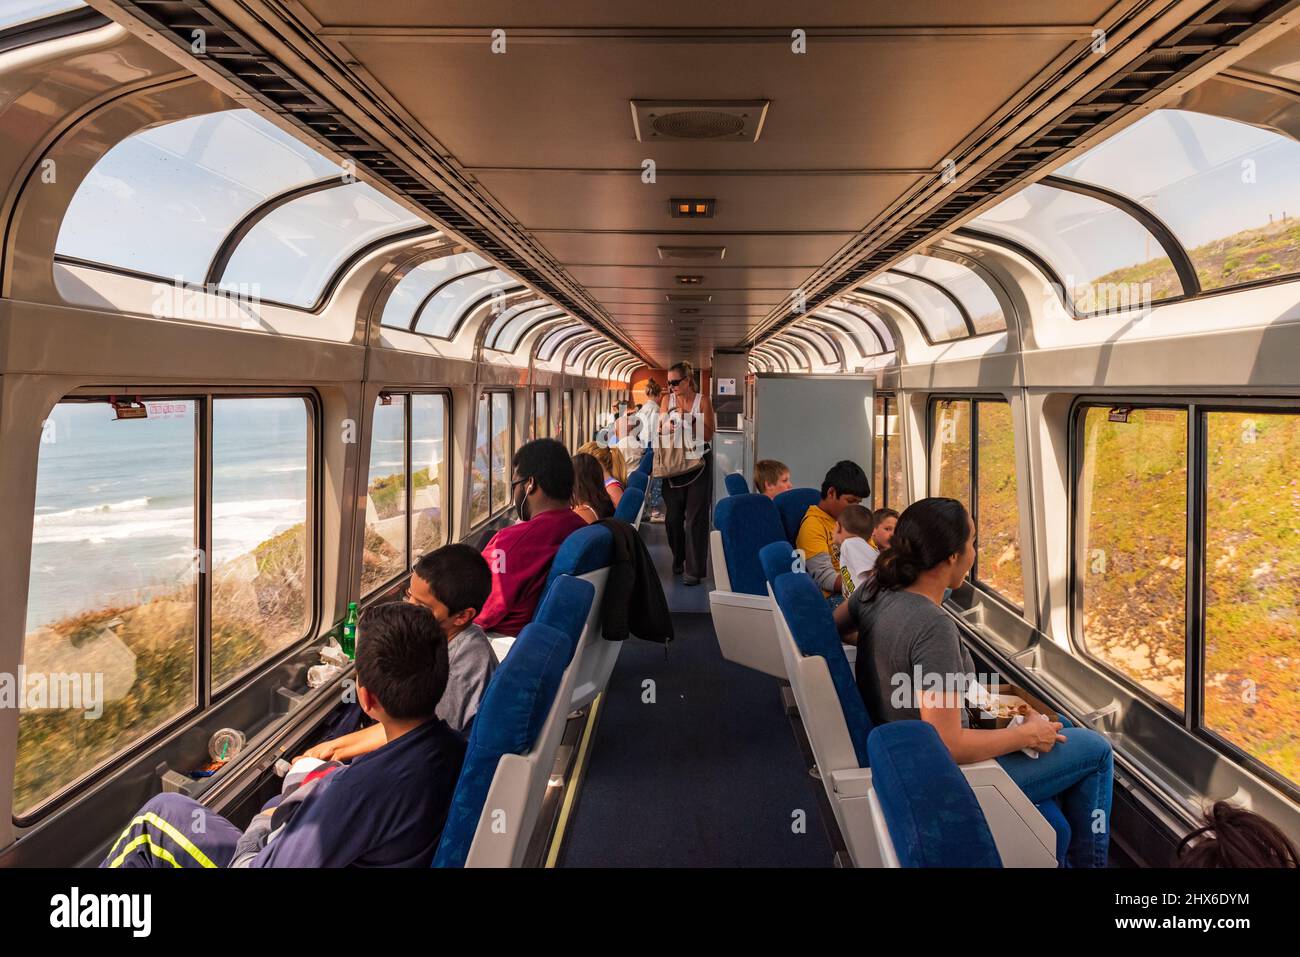 California Central/EE.UU. - 2 de abril de 2016: Los pasajeros admiran la vista desde el tren de pasajeros Starlight de la costa de California. Foto de stock